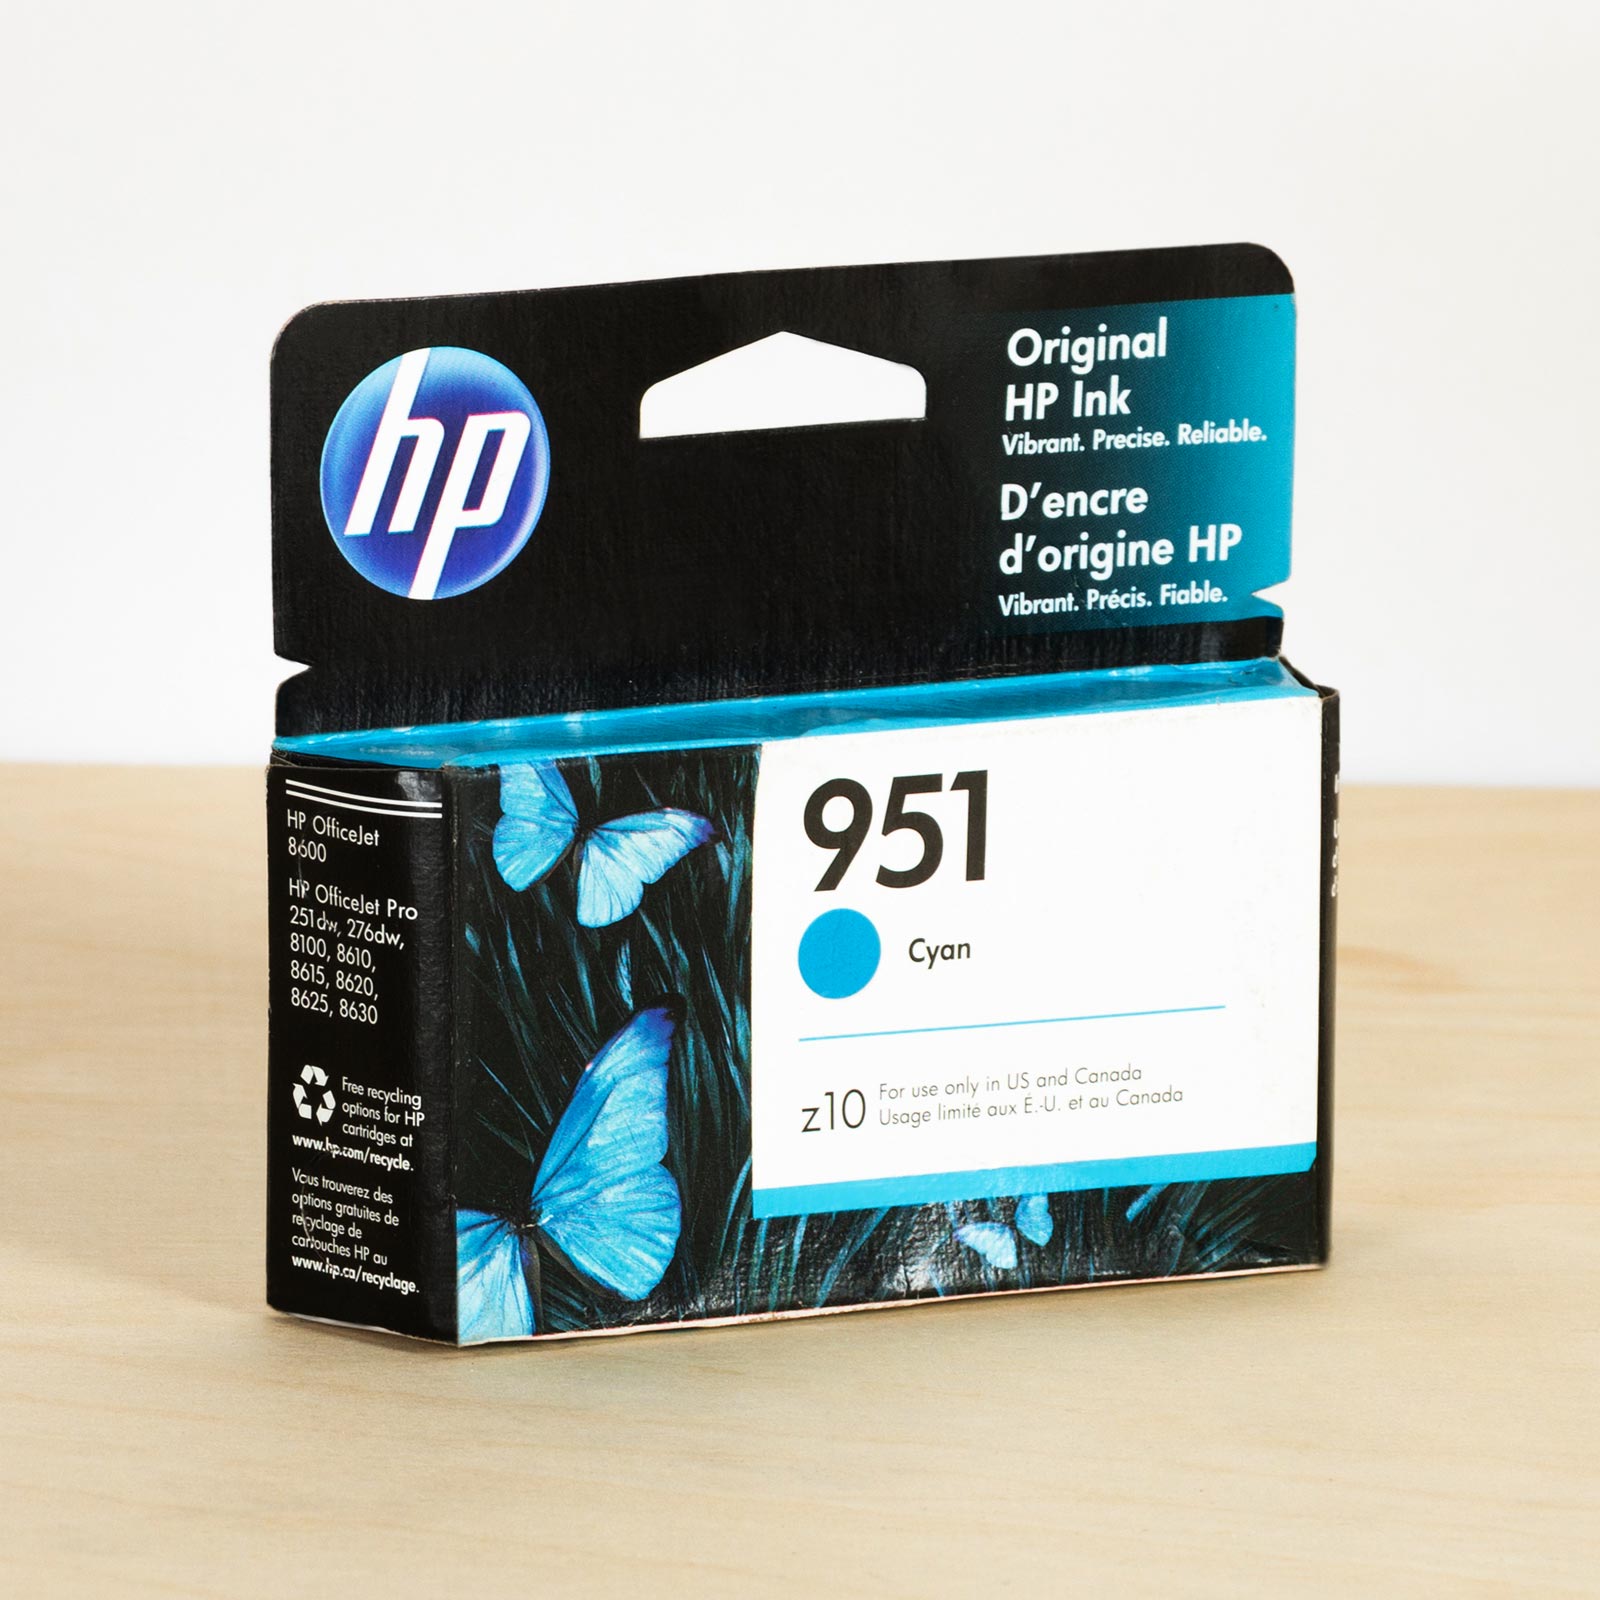 Hp ink-cyan-HP-OfficeJet-Pro-8620